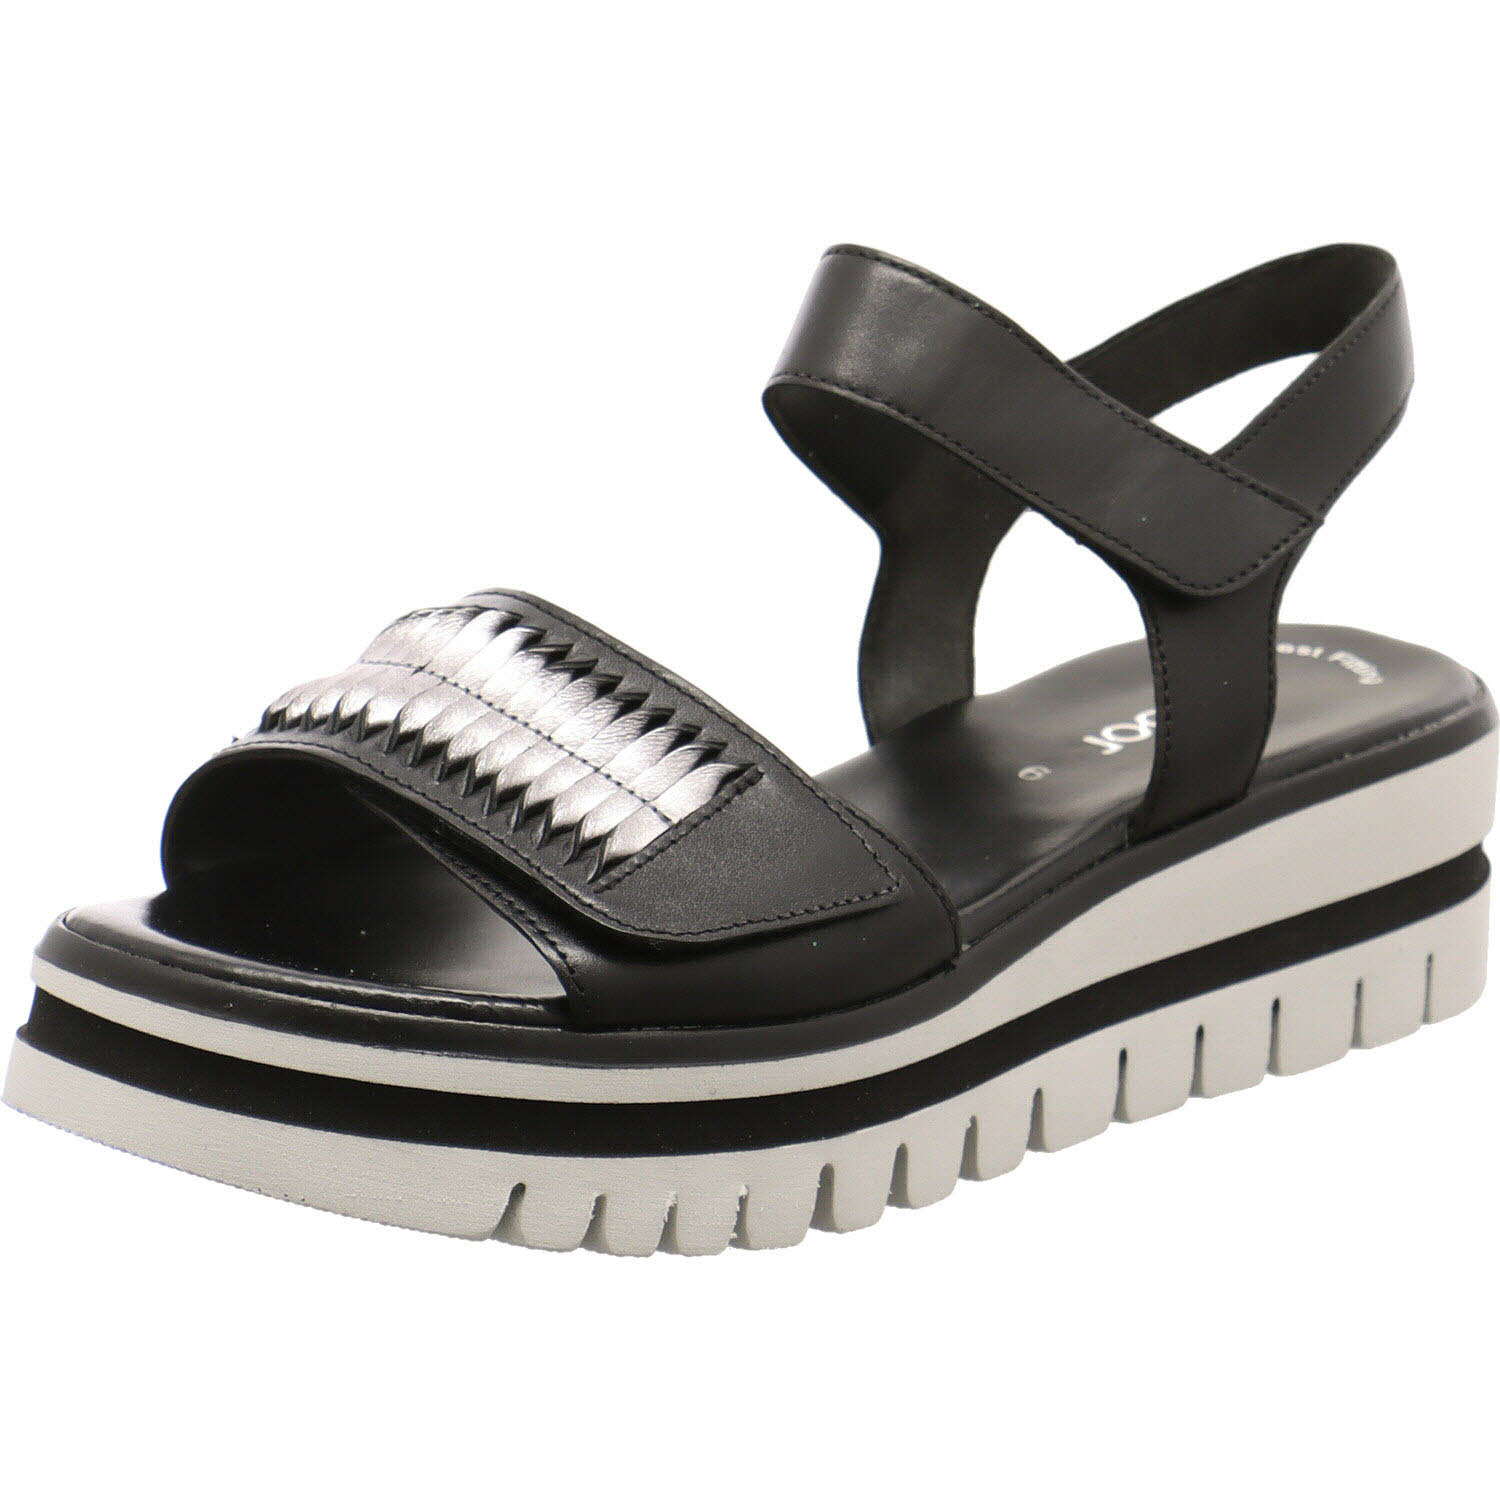 Damen Sandale von Gabor auch in Schwarz erhältlich